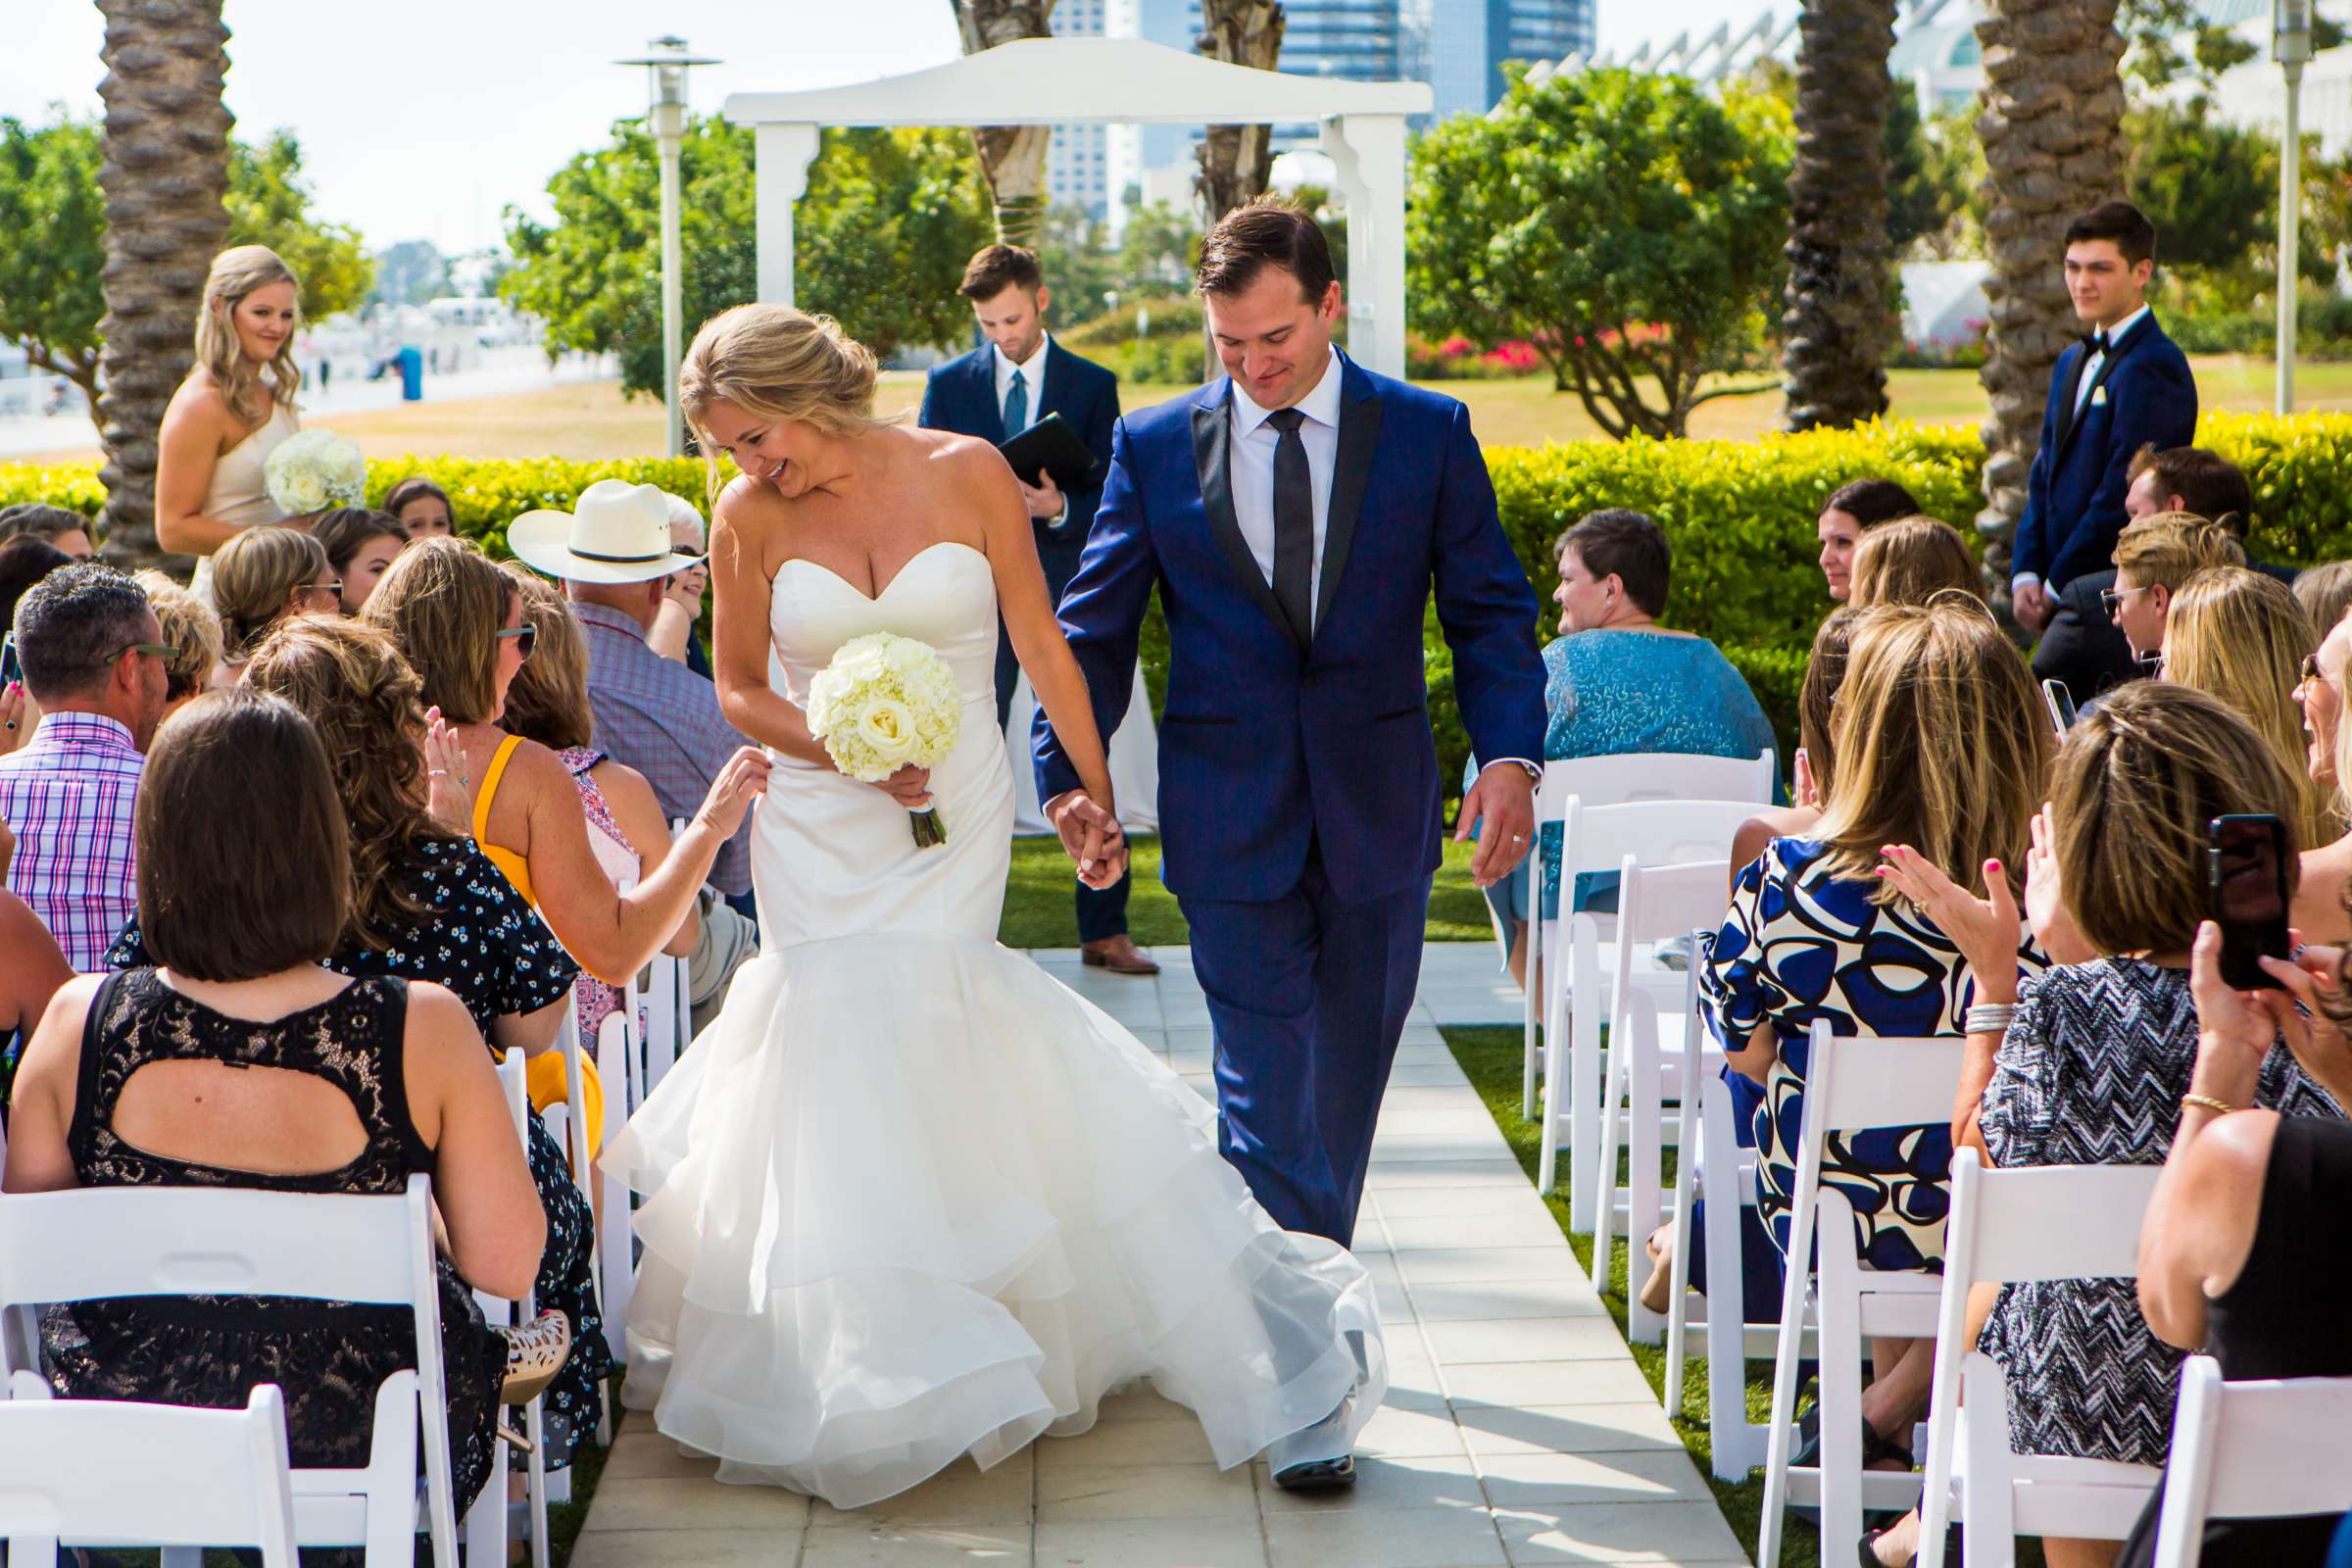 Hilton San Diego Bayfront Wedding, Debi and Dan Wedding Photo #484094 by True Photography